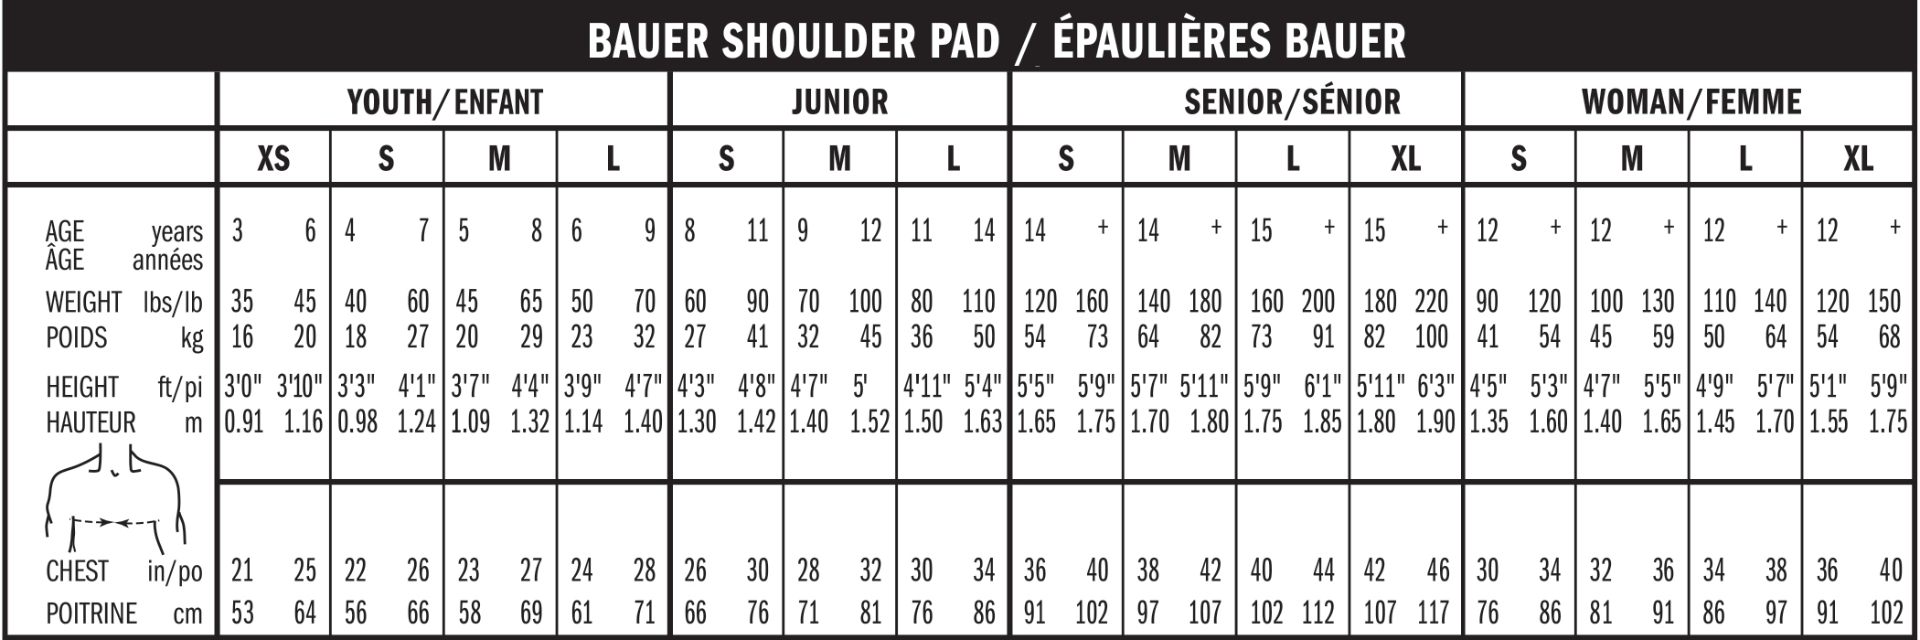 Bauer shoulder sizechart